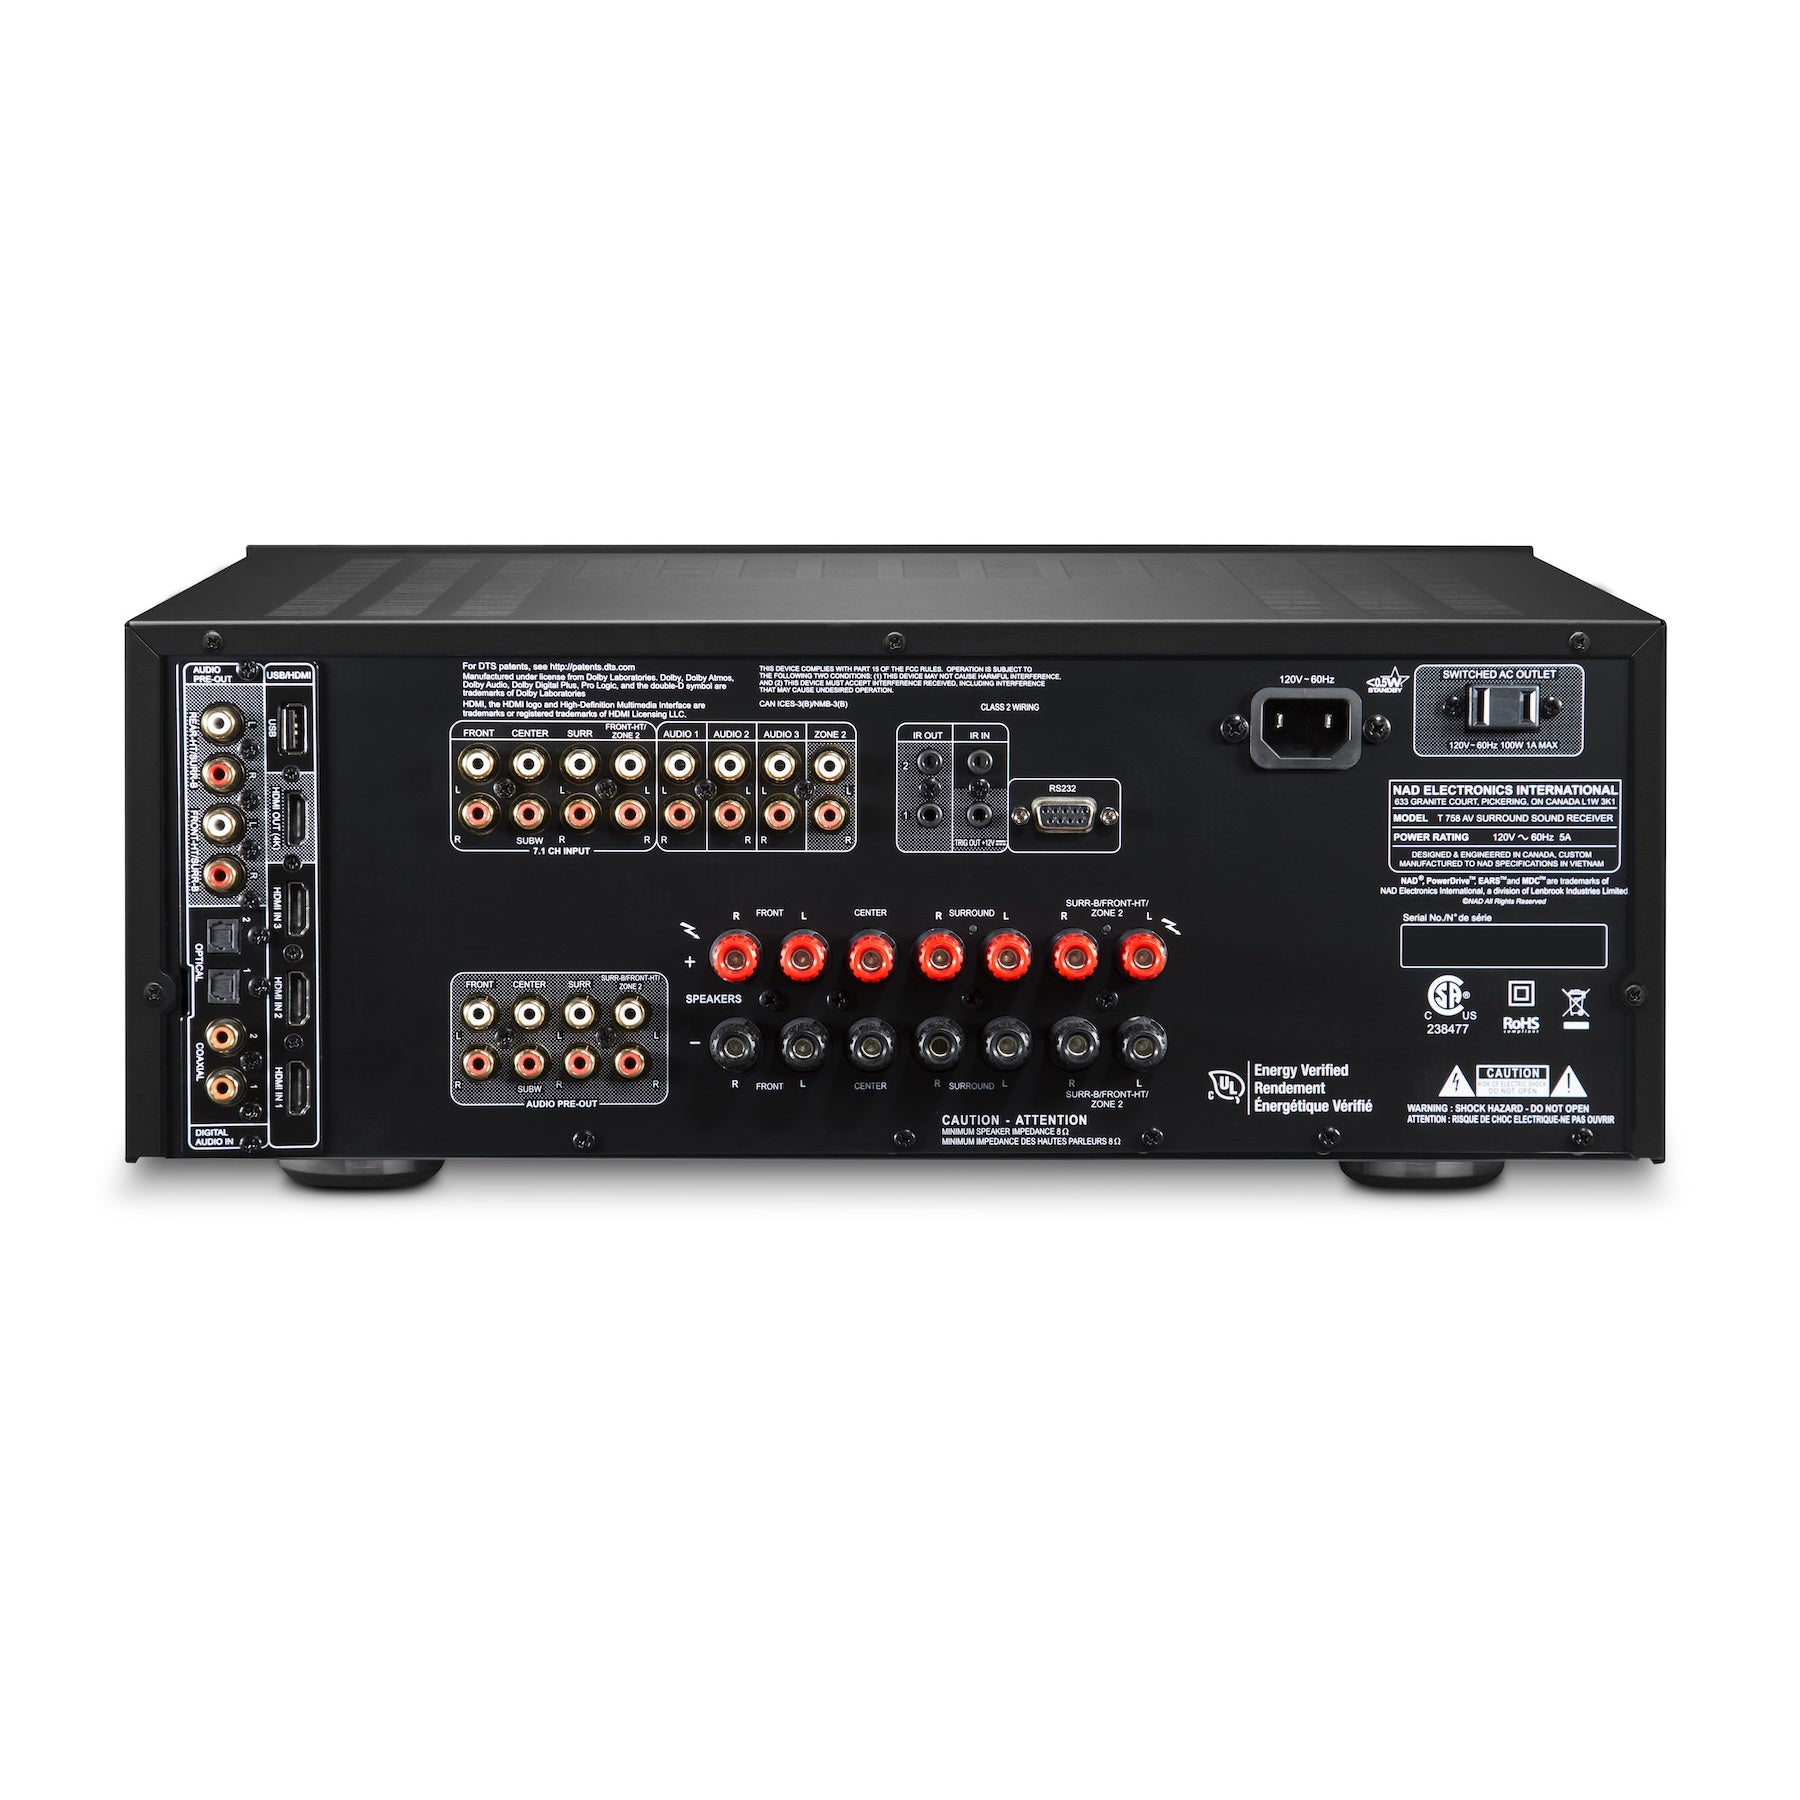 NAD T 758 V3i AV Surround Sound Receiver